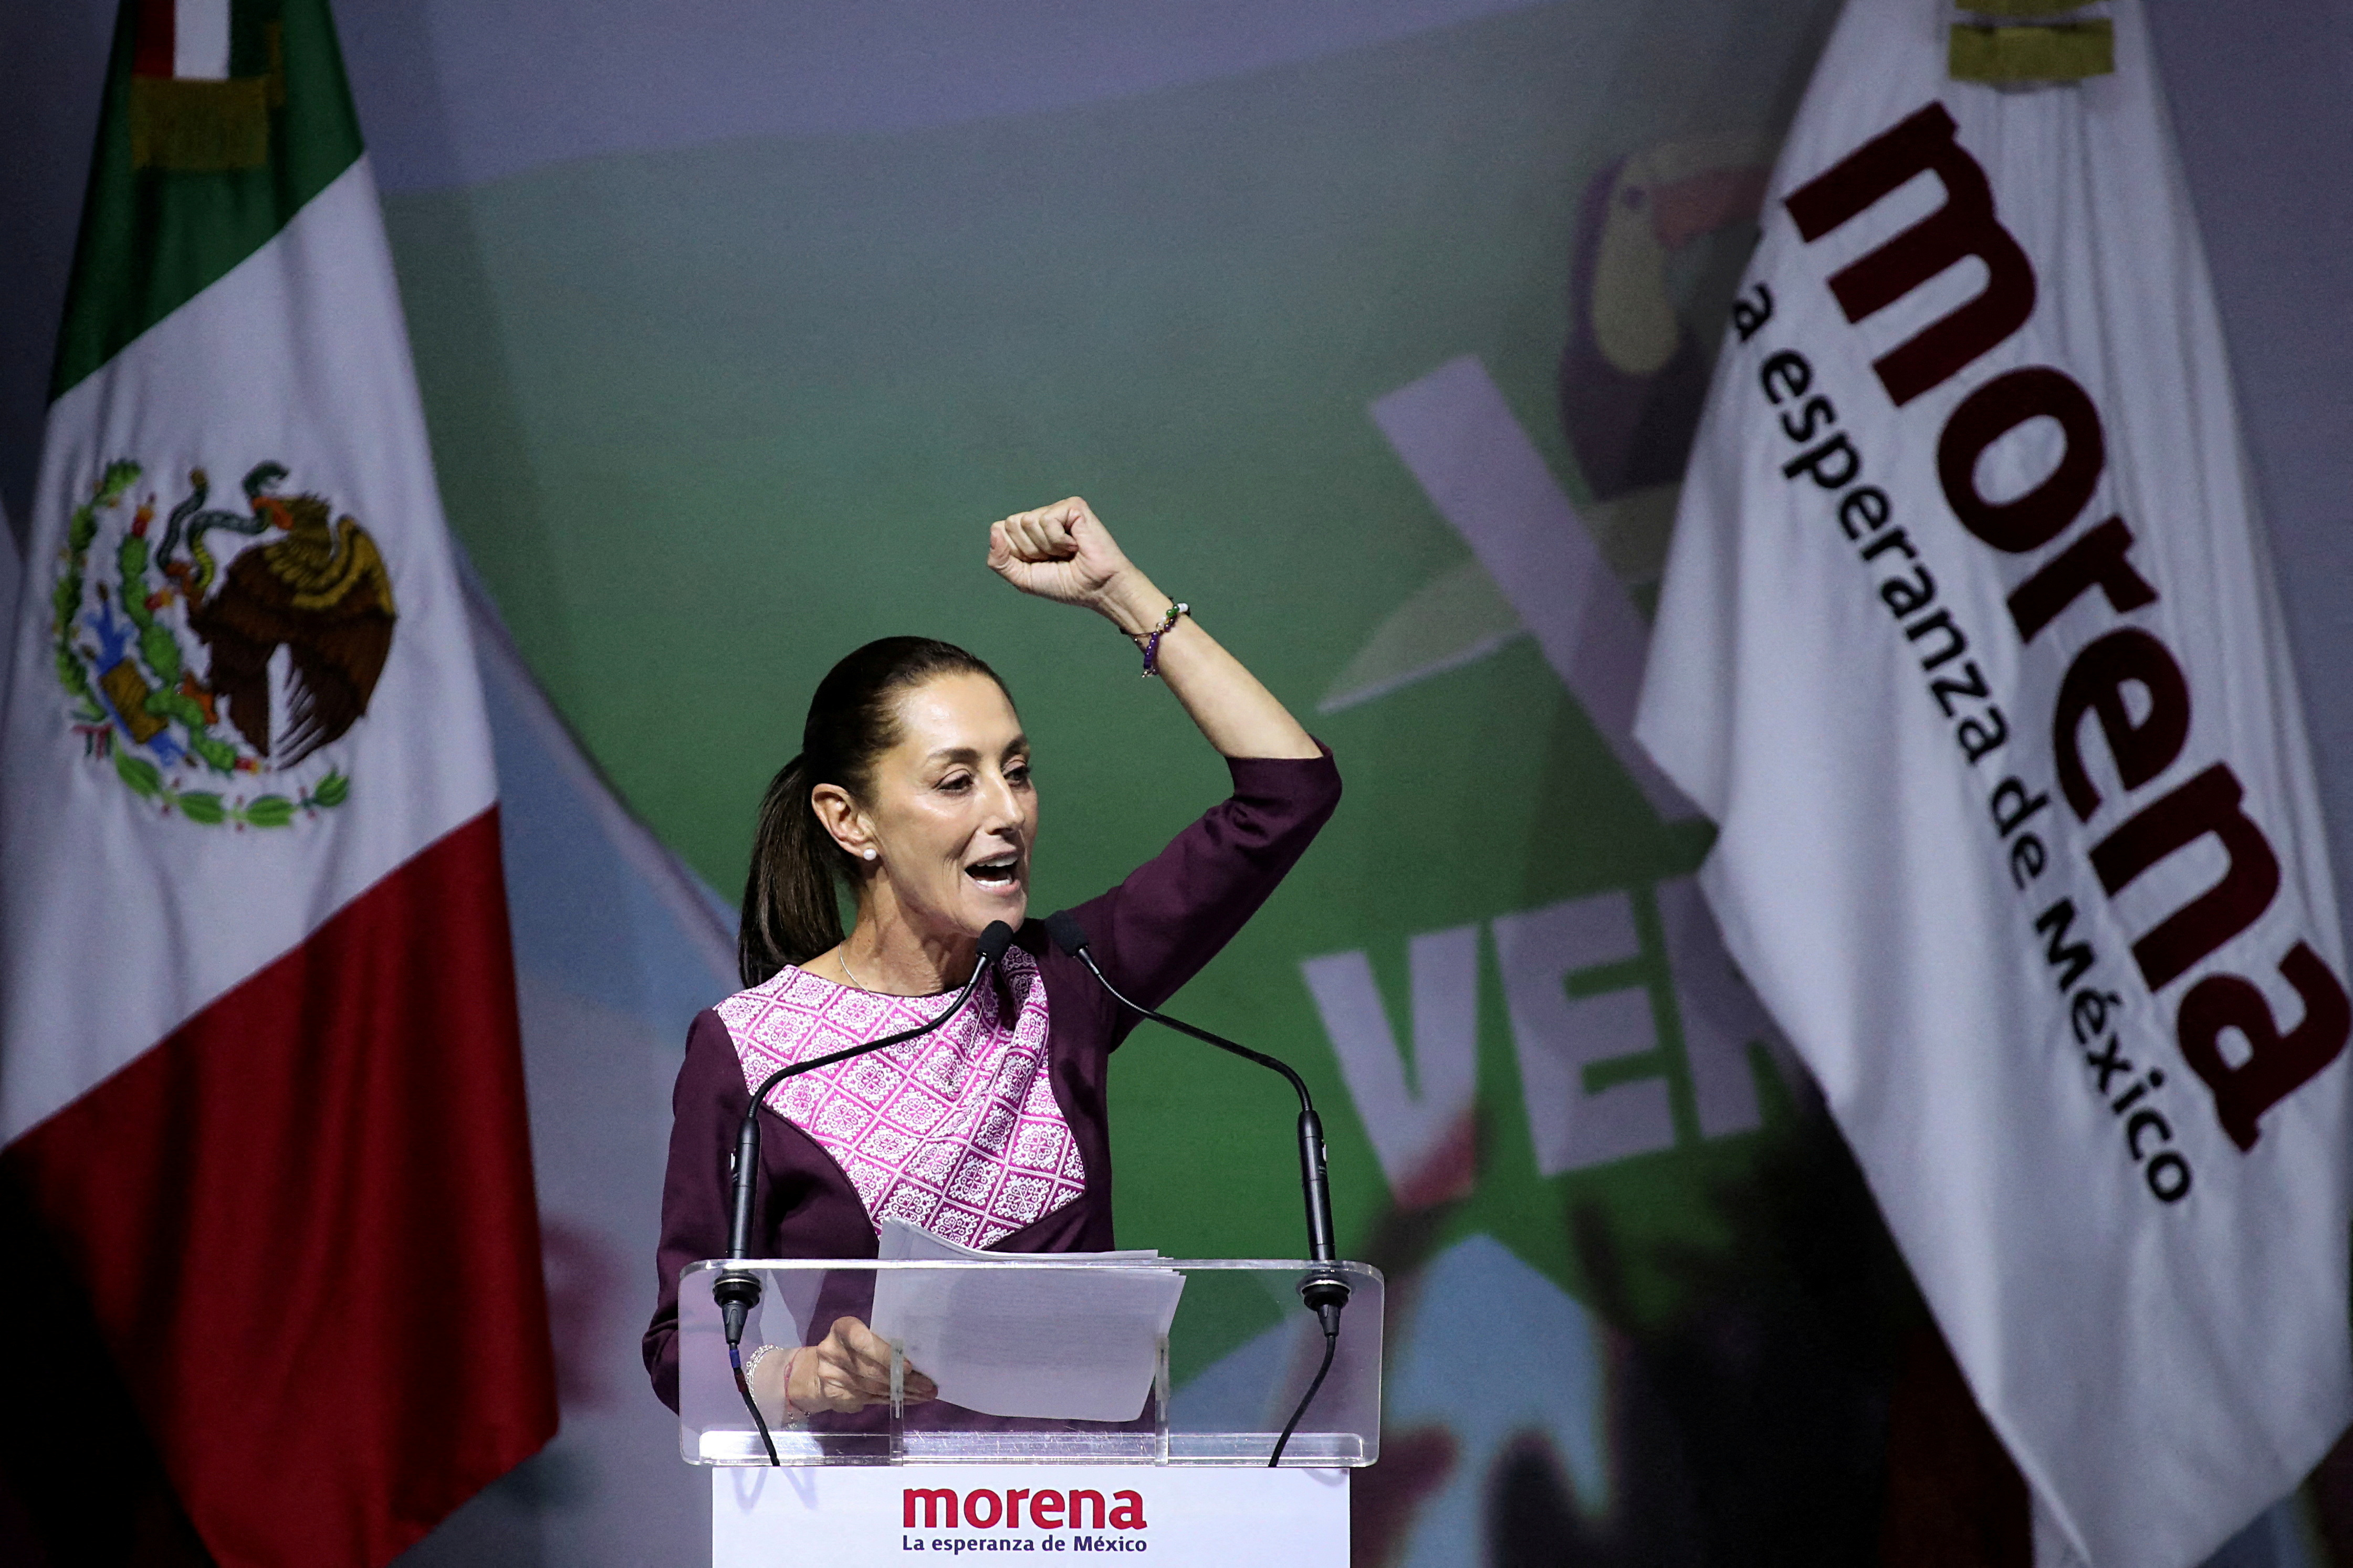 El partido gobernante MORENA anunció su candidato presidencial en la Ciudad de México.